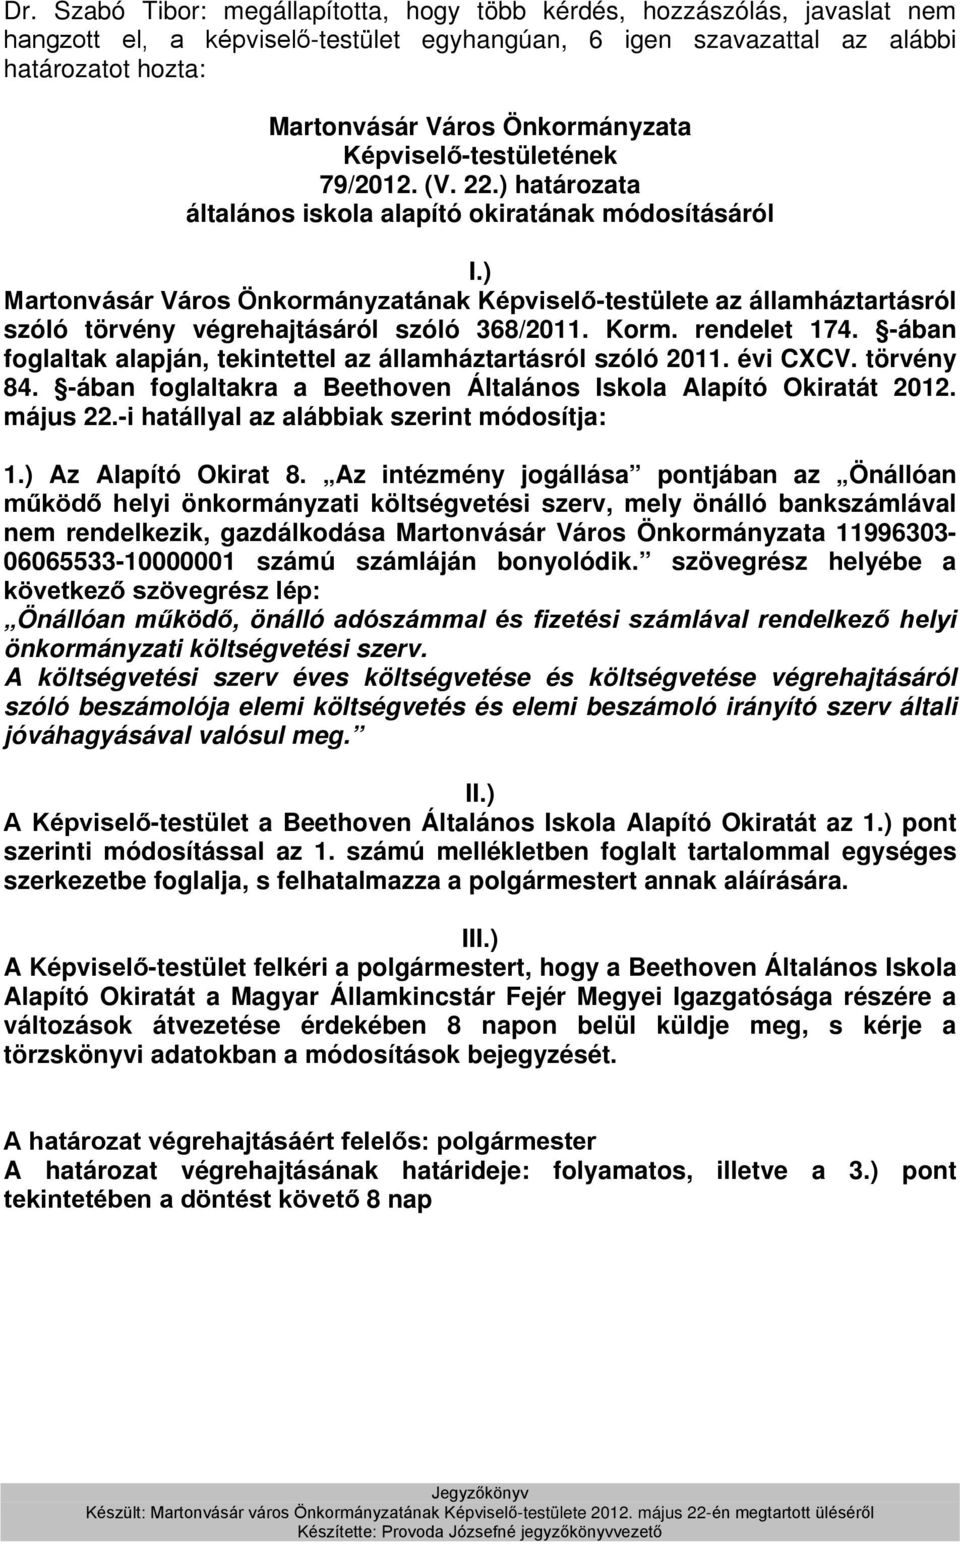 rendelet 174. -ában foglaltak alapján, tekintettel az államháztartásról szóló 2011. évi CXCV. törvény 84. -ában foglaltakra a Beethoven Általános Iskola Alapító Okiratát 2012. május 22.